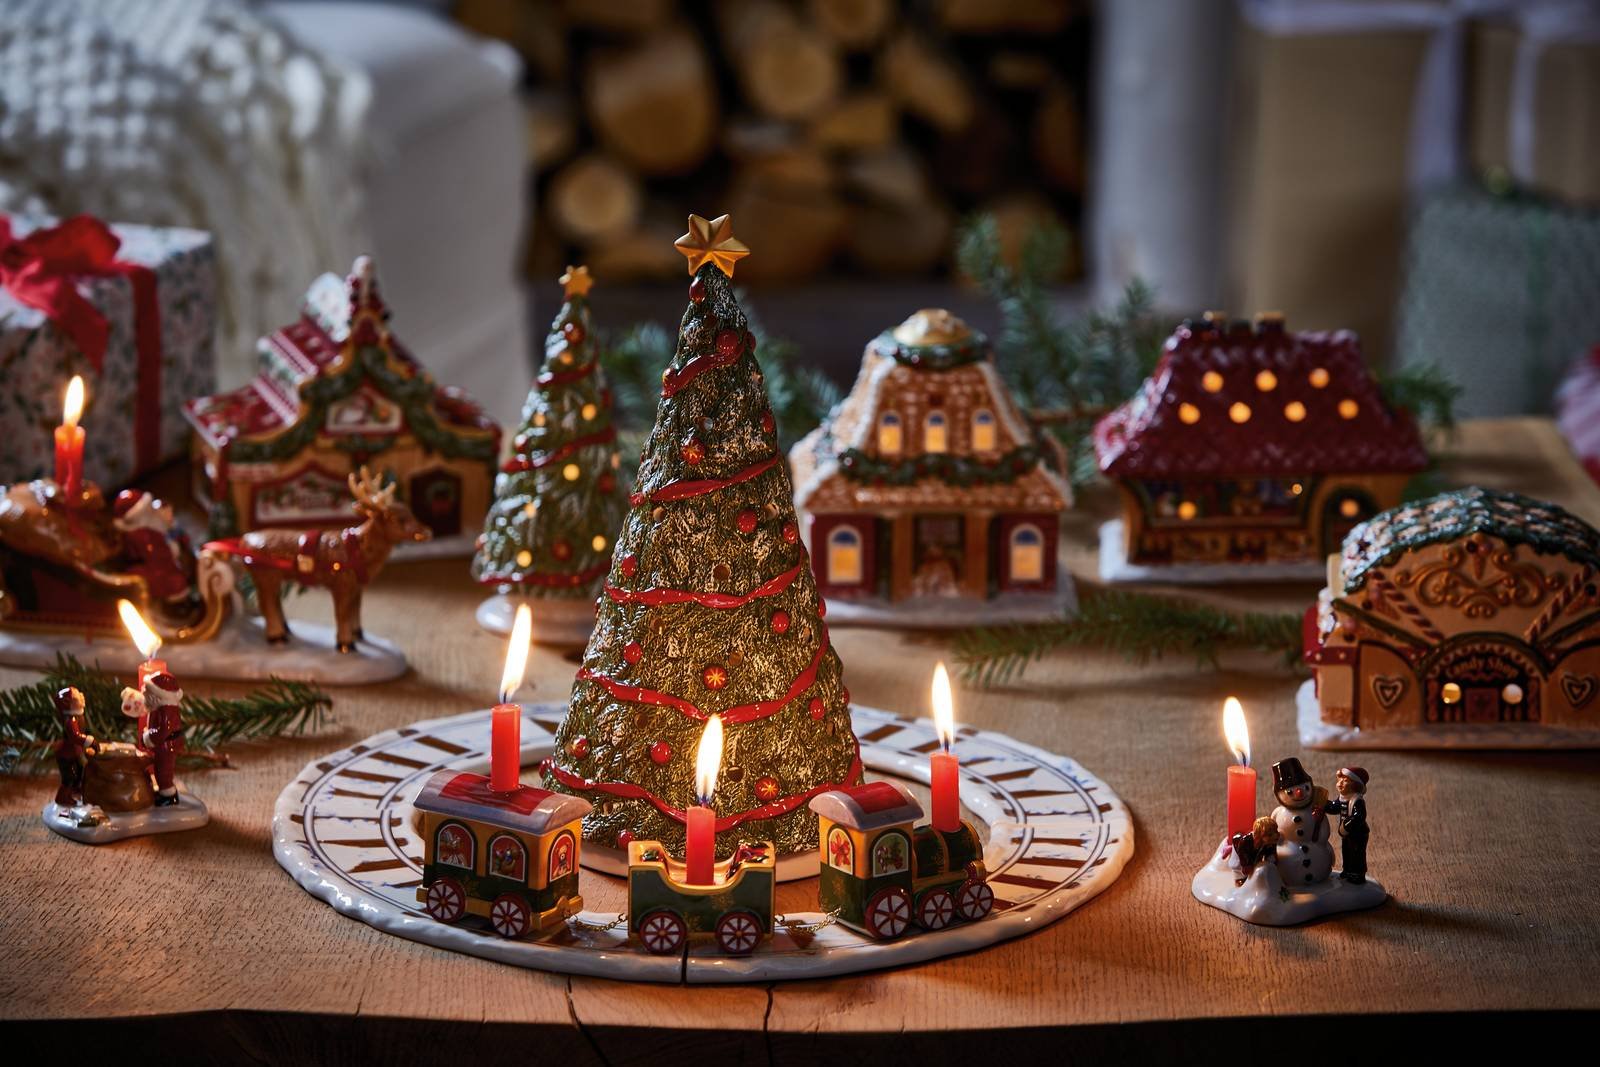 Foto Di Decorazioni Di Natale.Albero Di Natale E Decorazioni Crea Una Magica Atmosfera Cose Di Casa